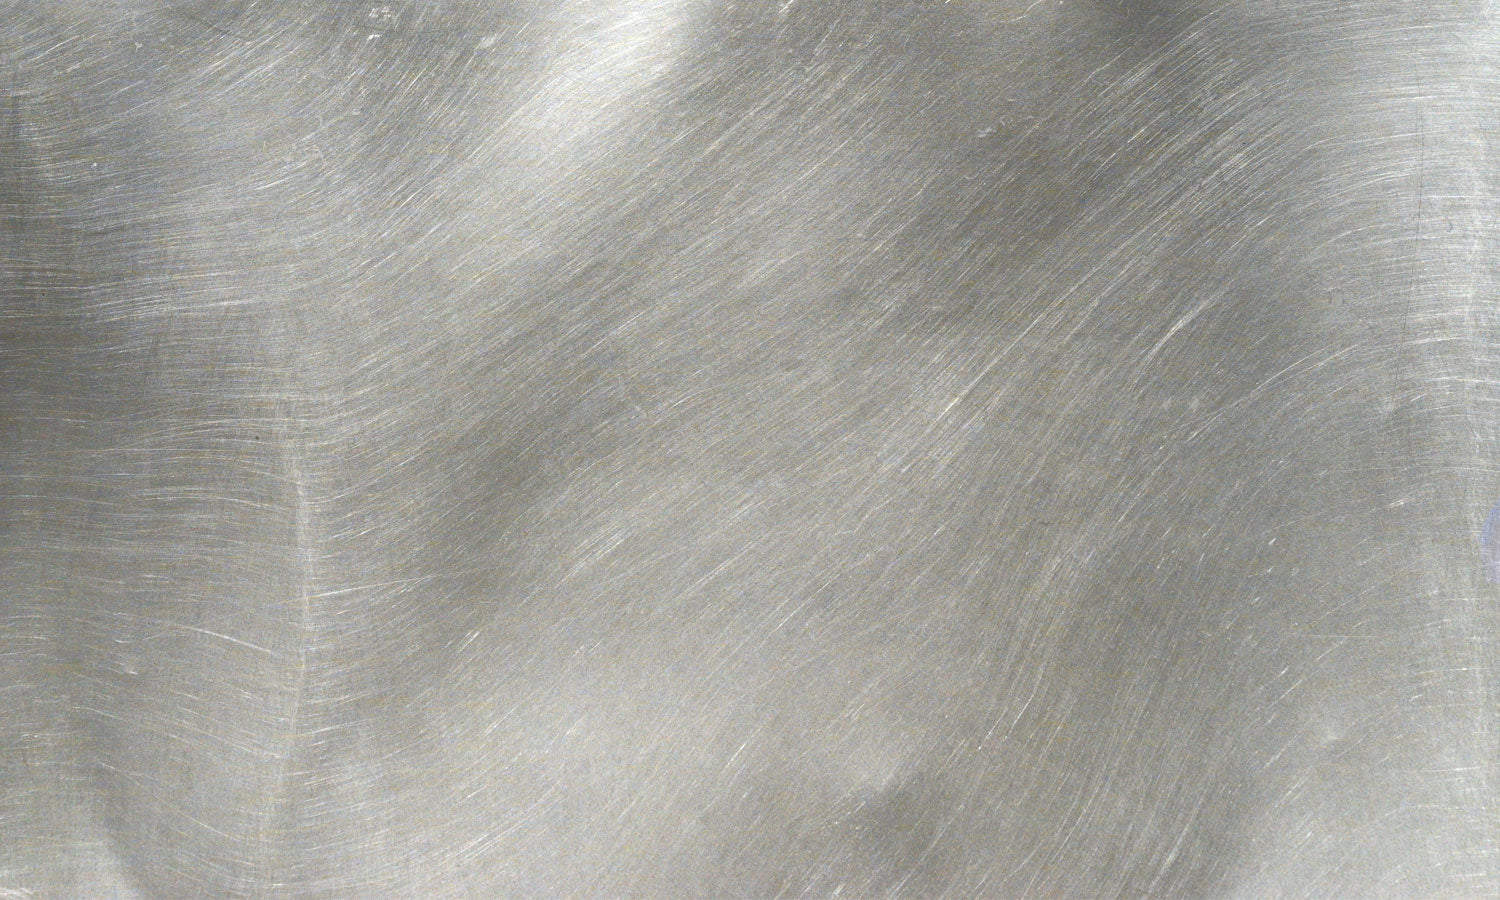 Kuhinjski paneli  Metal texture - Stekleni / PVC plošče / Pleksi steklo - s tiskom za kuhinjo, Stenske obloge PKU0108 - Life-decor.si